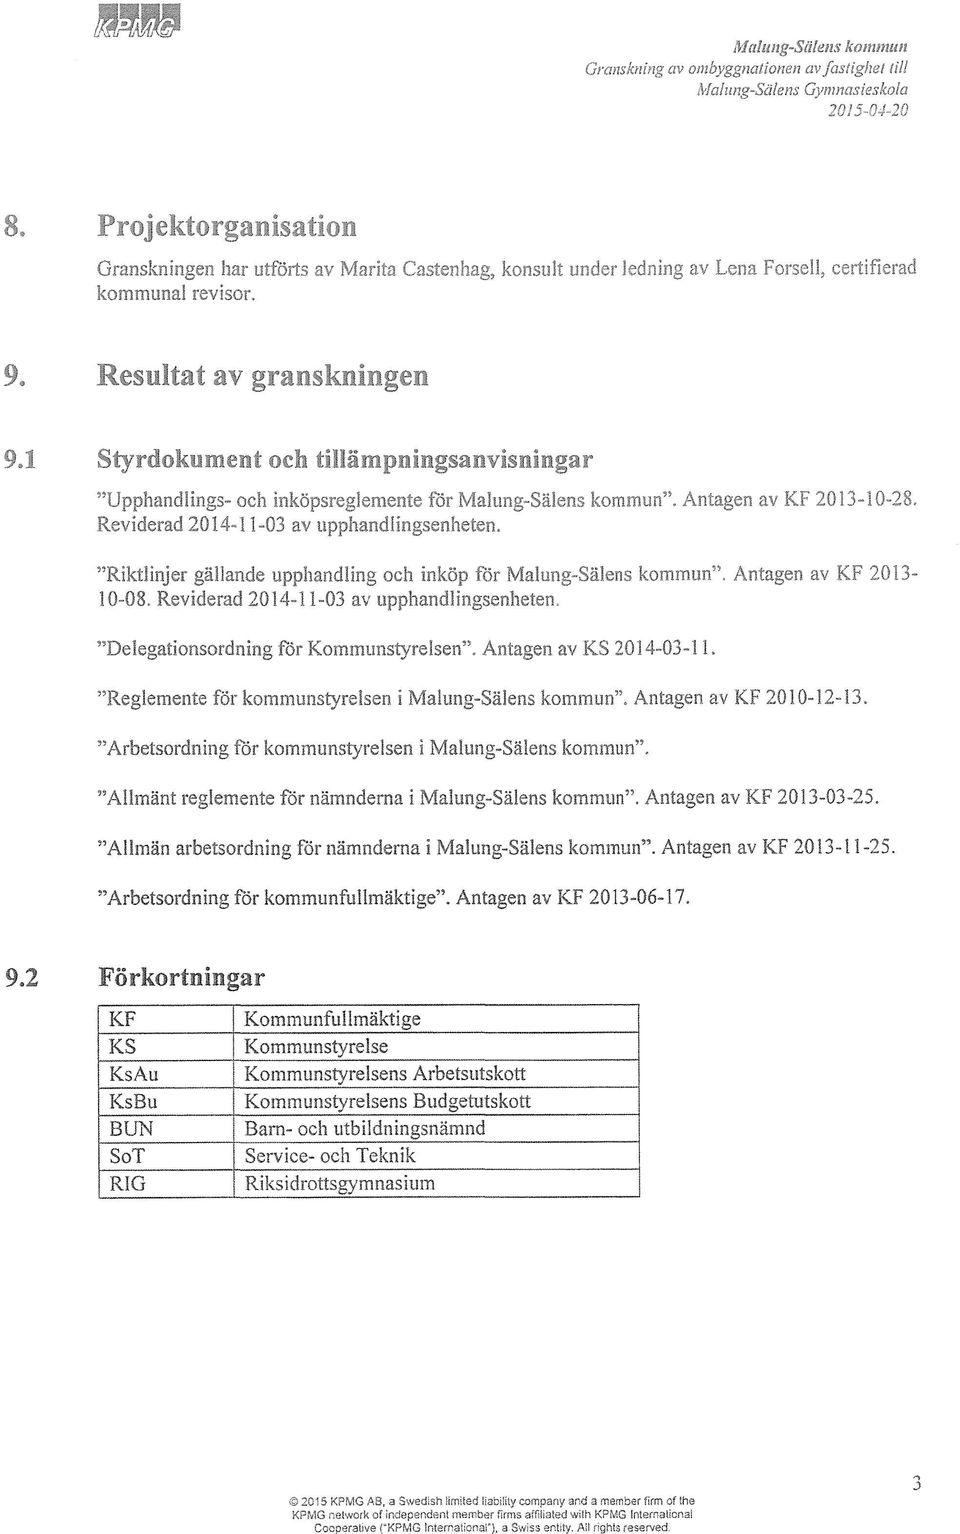 1 Styrdokument och tillämpningsanvisningar "Upphandlings- och Inköpsreglemente för Malung-Sälens kommun". Antagen av KF 2013-10-28, Reviderad 2014-11-03 av upphandlingsenheten.